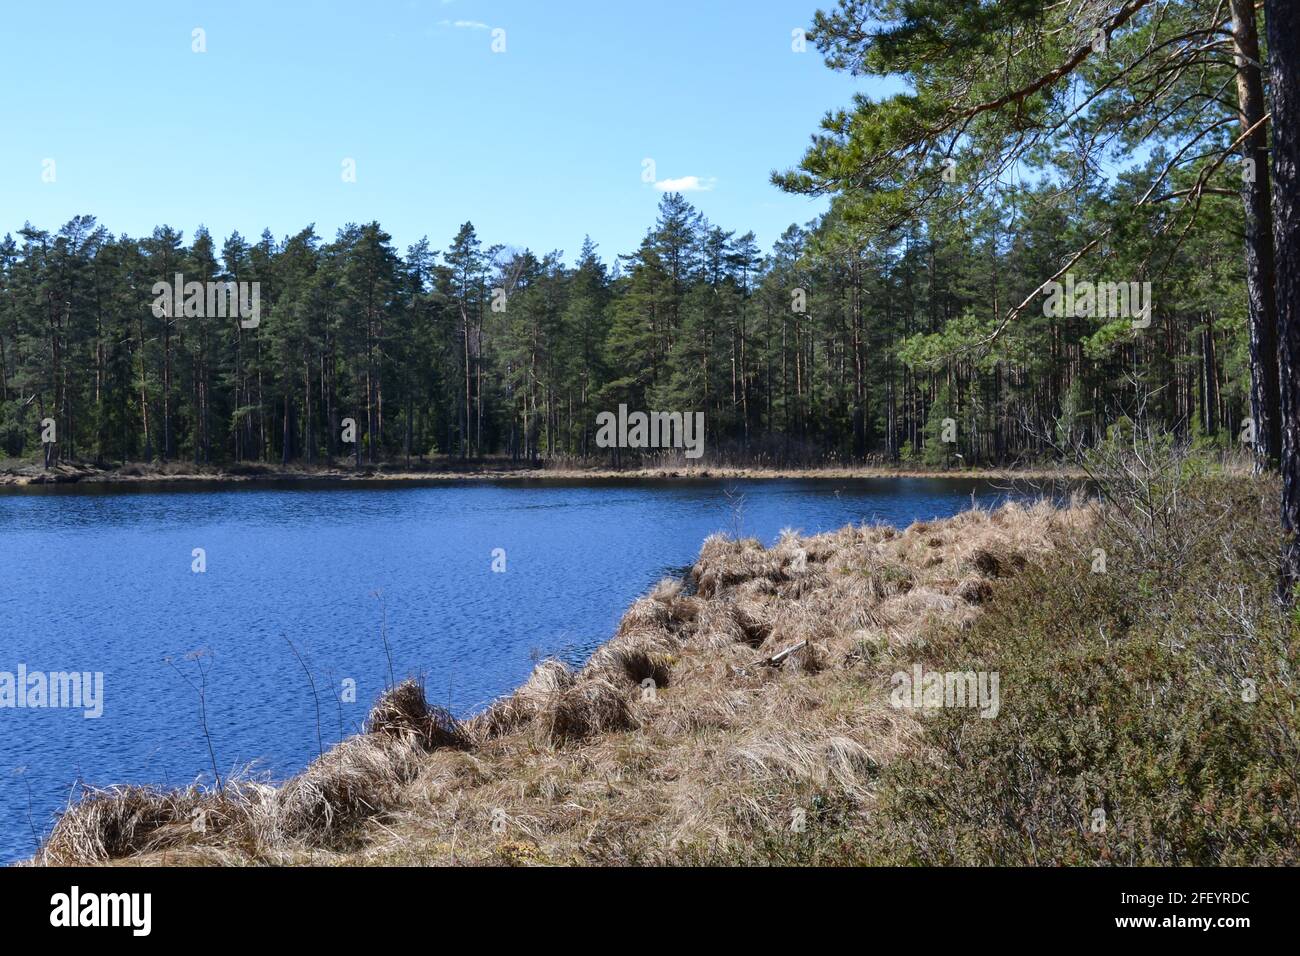 piccolo lago forestale in campagna con riflessi d'acqua in acque calme. luogo di meditazione. paesaggio estivo Foto Stock